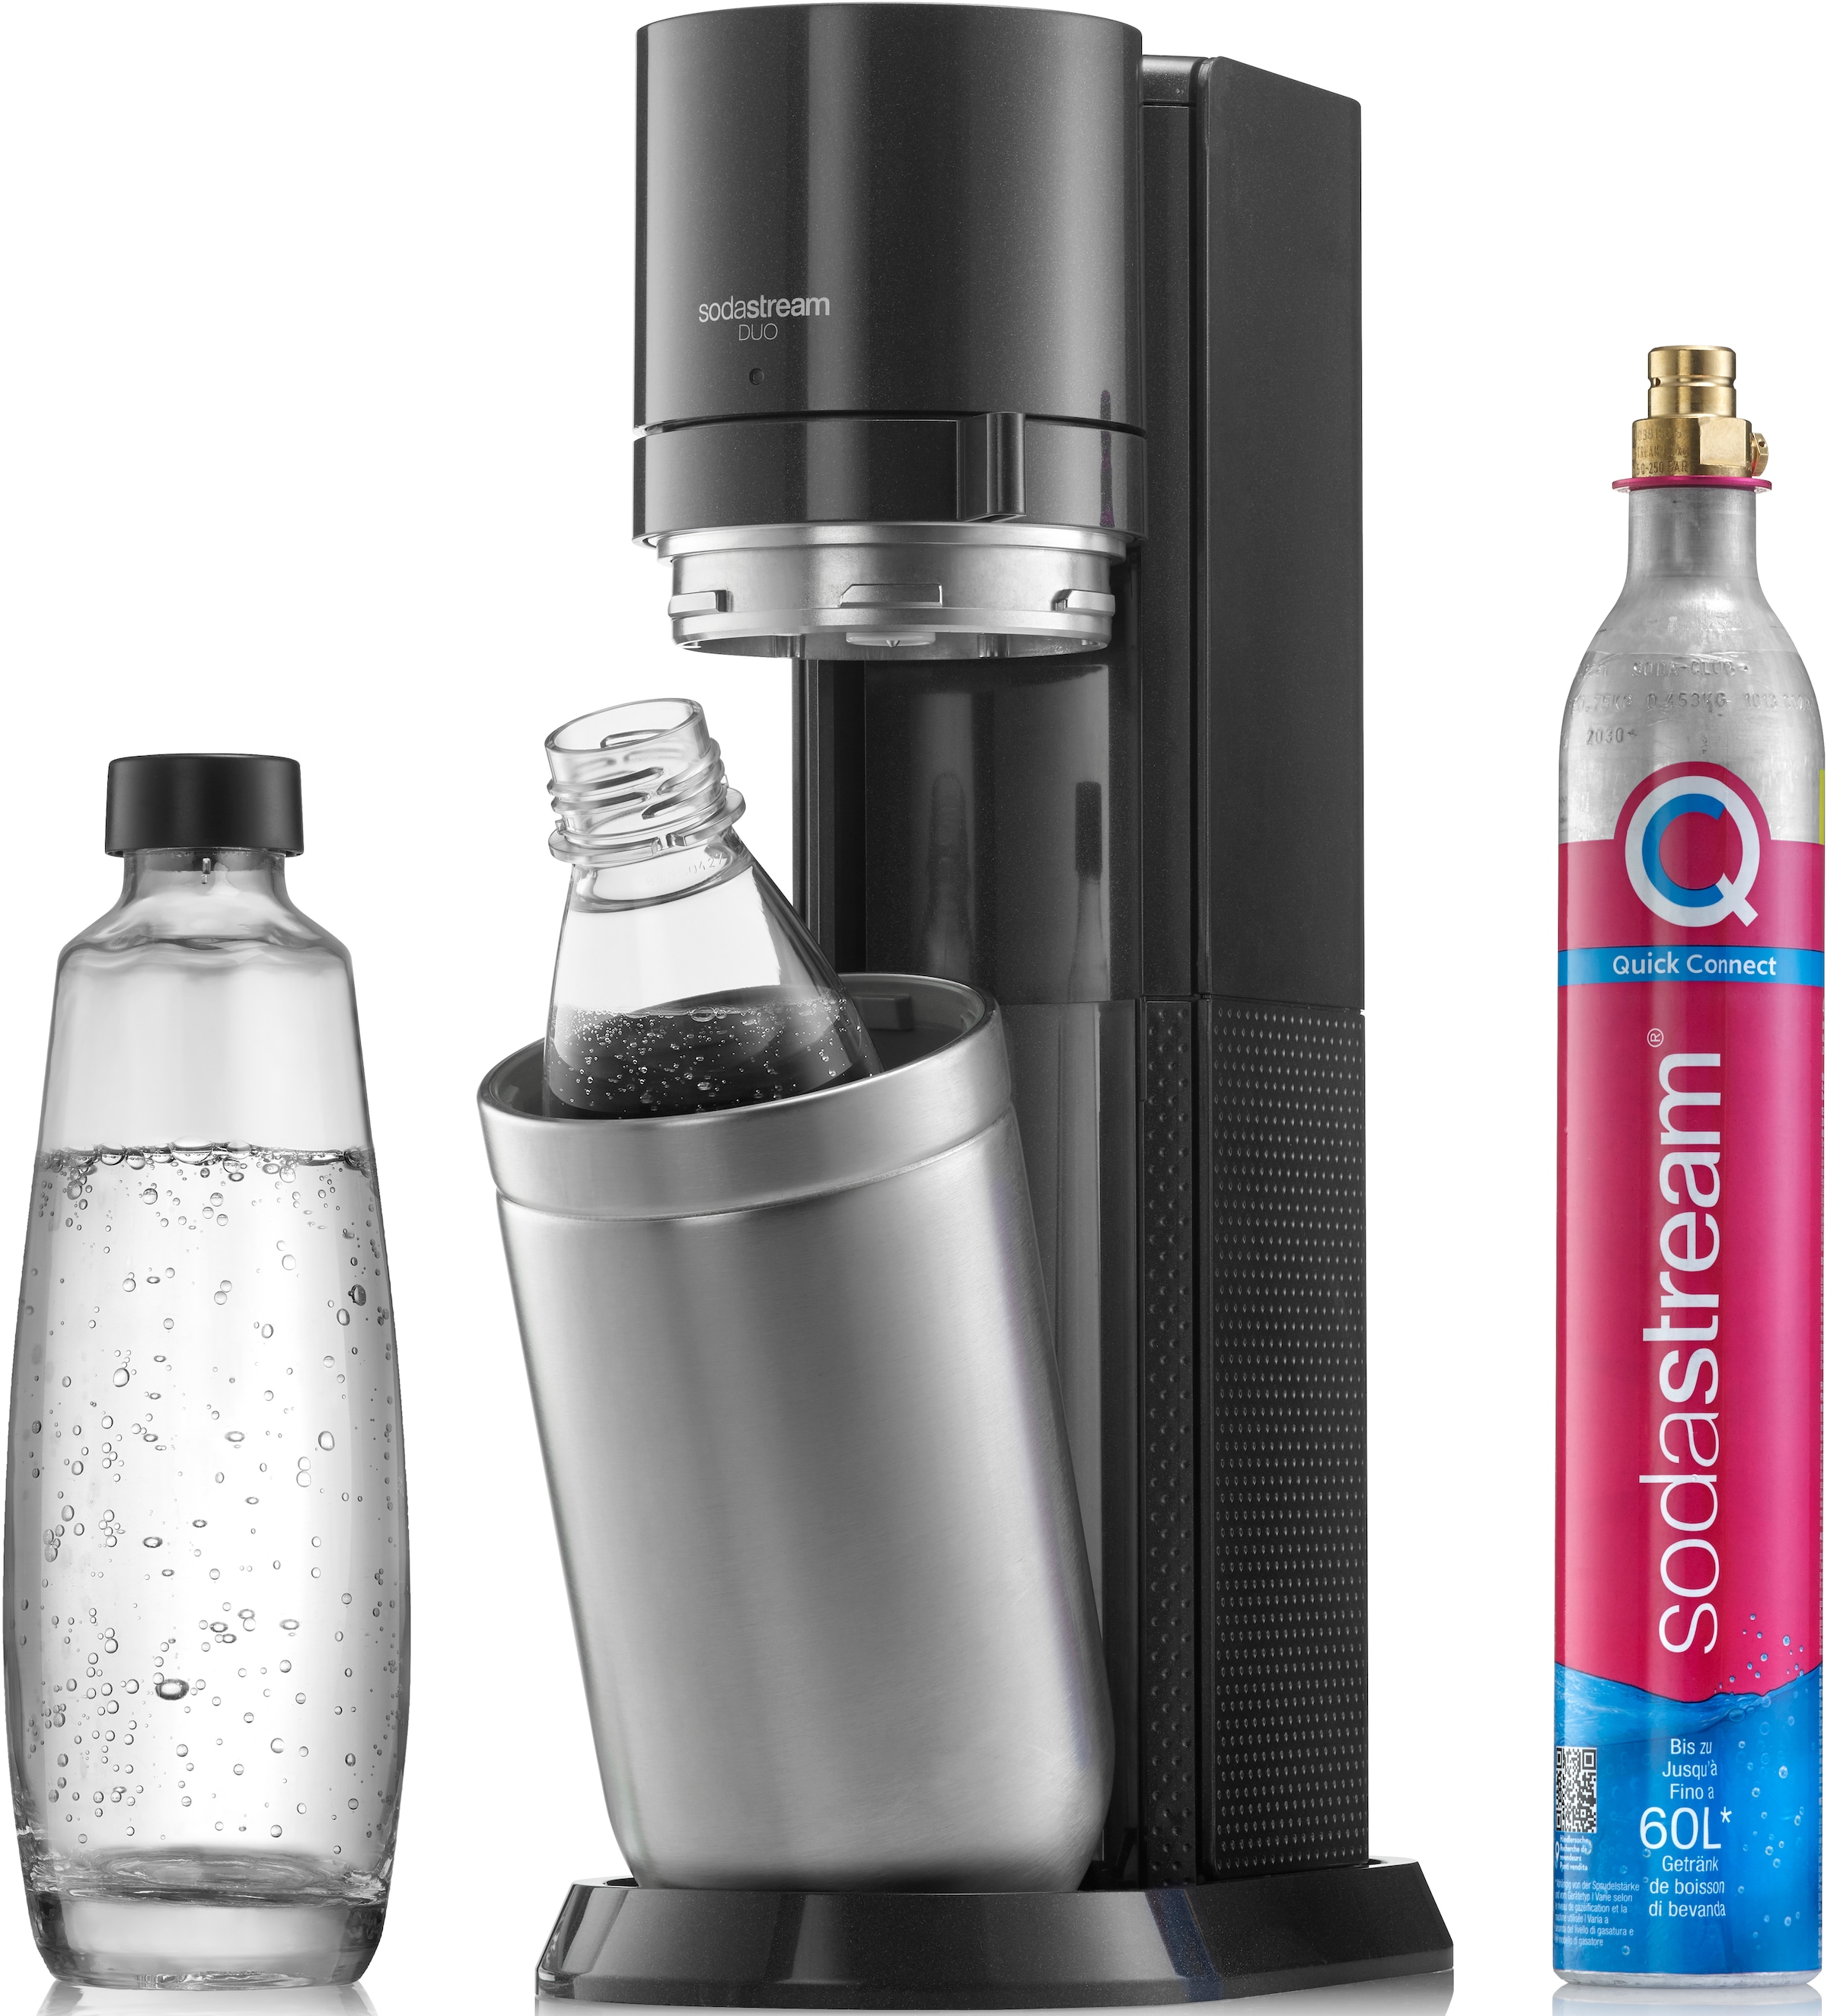 SodaStream E-Duo, Elektrischer Wassersprudler mit CO2-Zylinder, Glasflasche  und 2X 1L spülmaschinenfeste Kunststoff-Flasche, Höhe: 44cm, Farbe: Titan :  : Küche, Haushalt & Wohnen